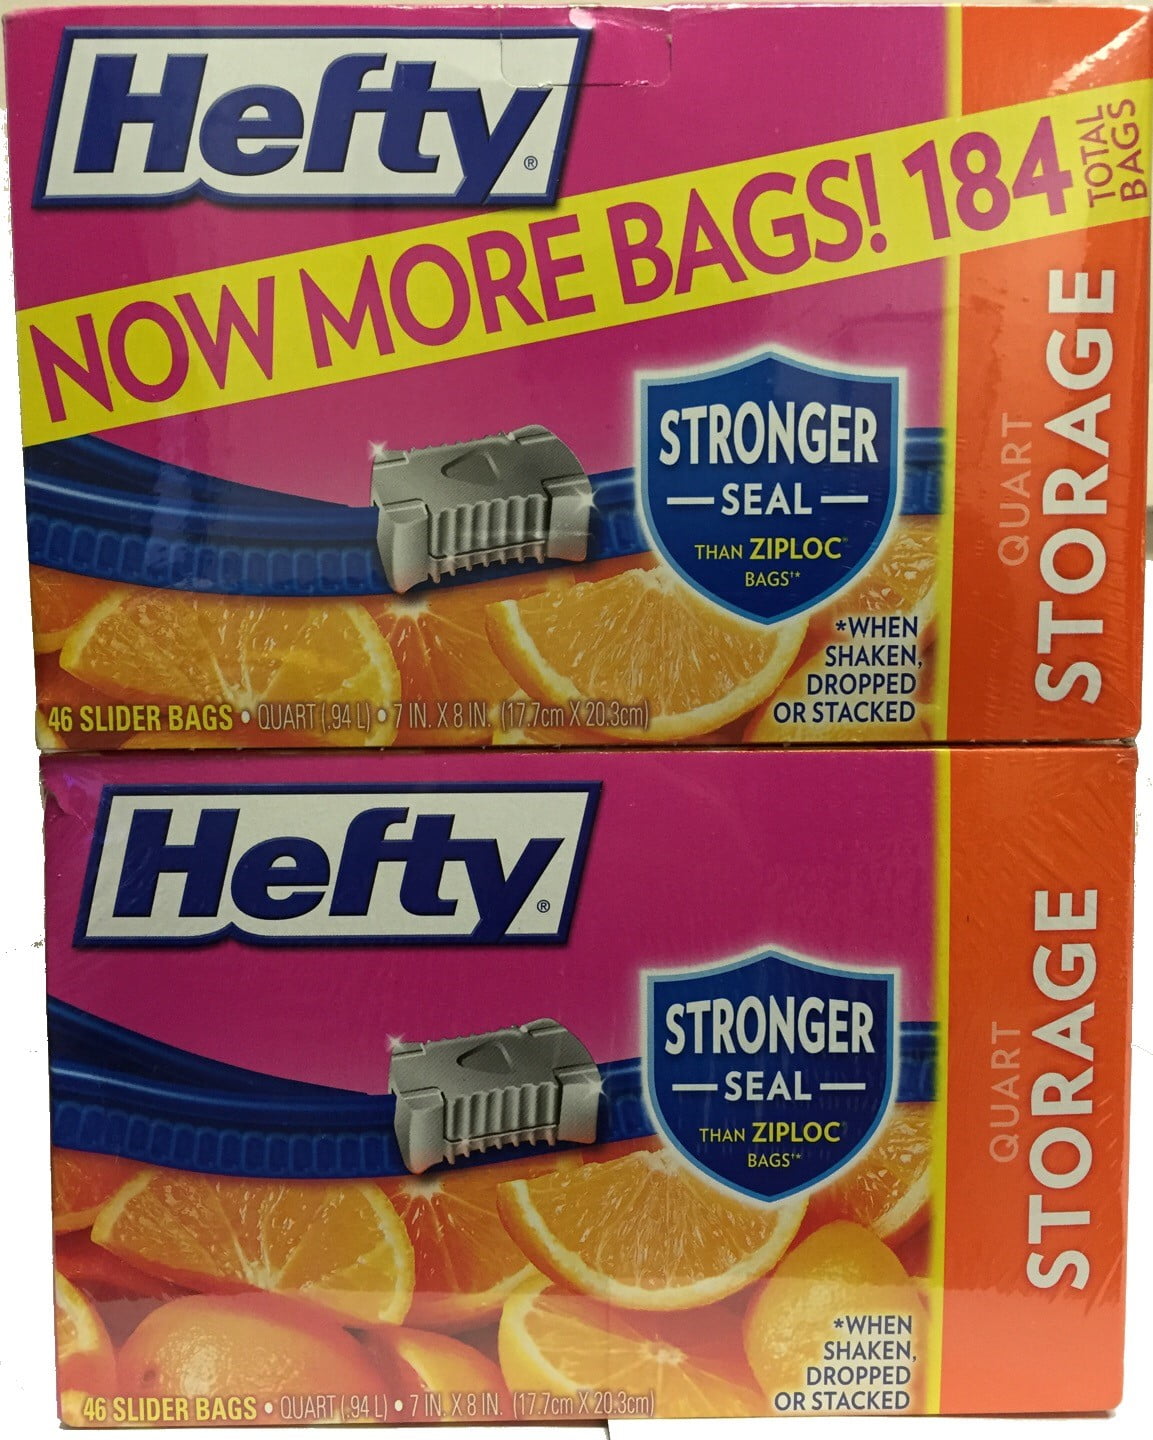 Hefty® Storage Quart Slider Bags Value Pack, 40 ct - Harris Teeter